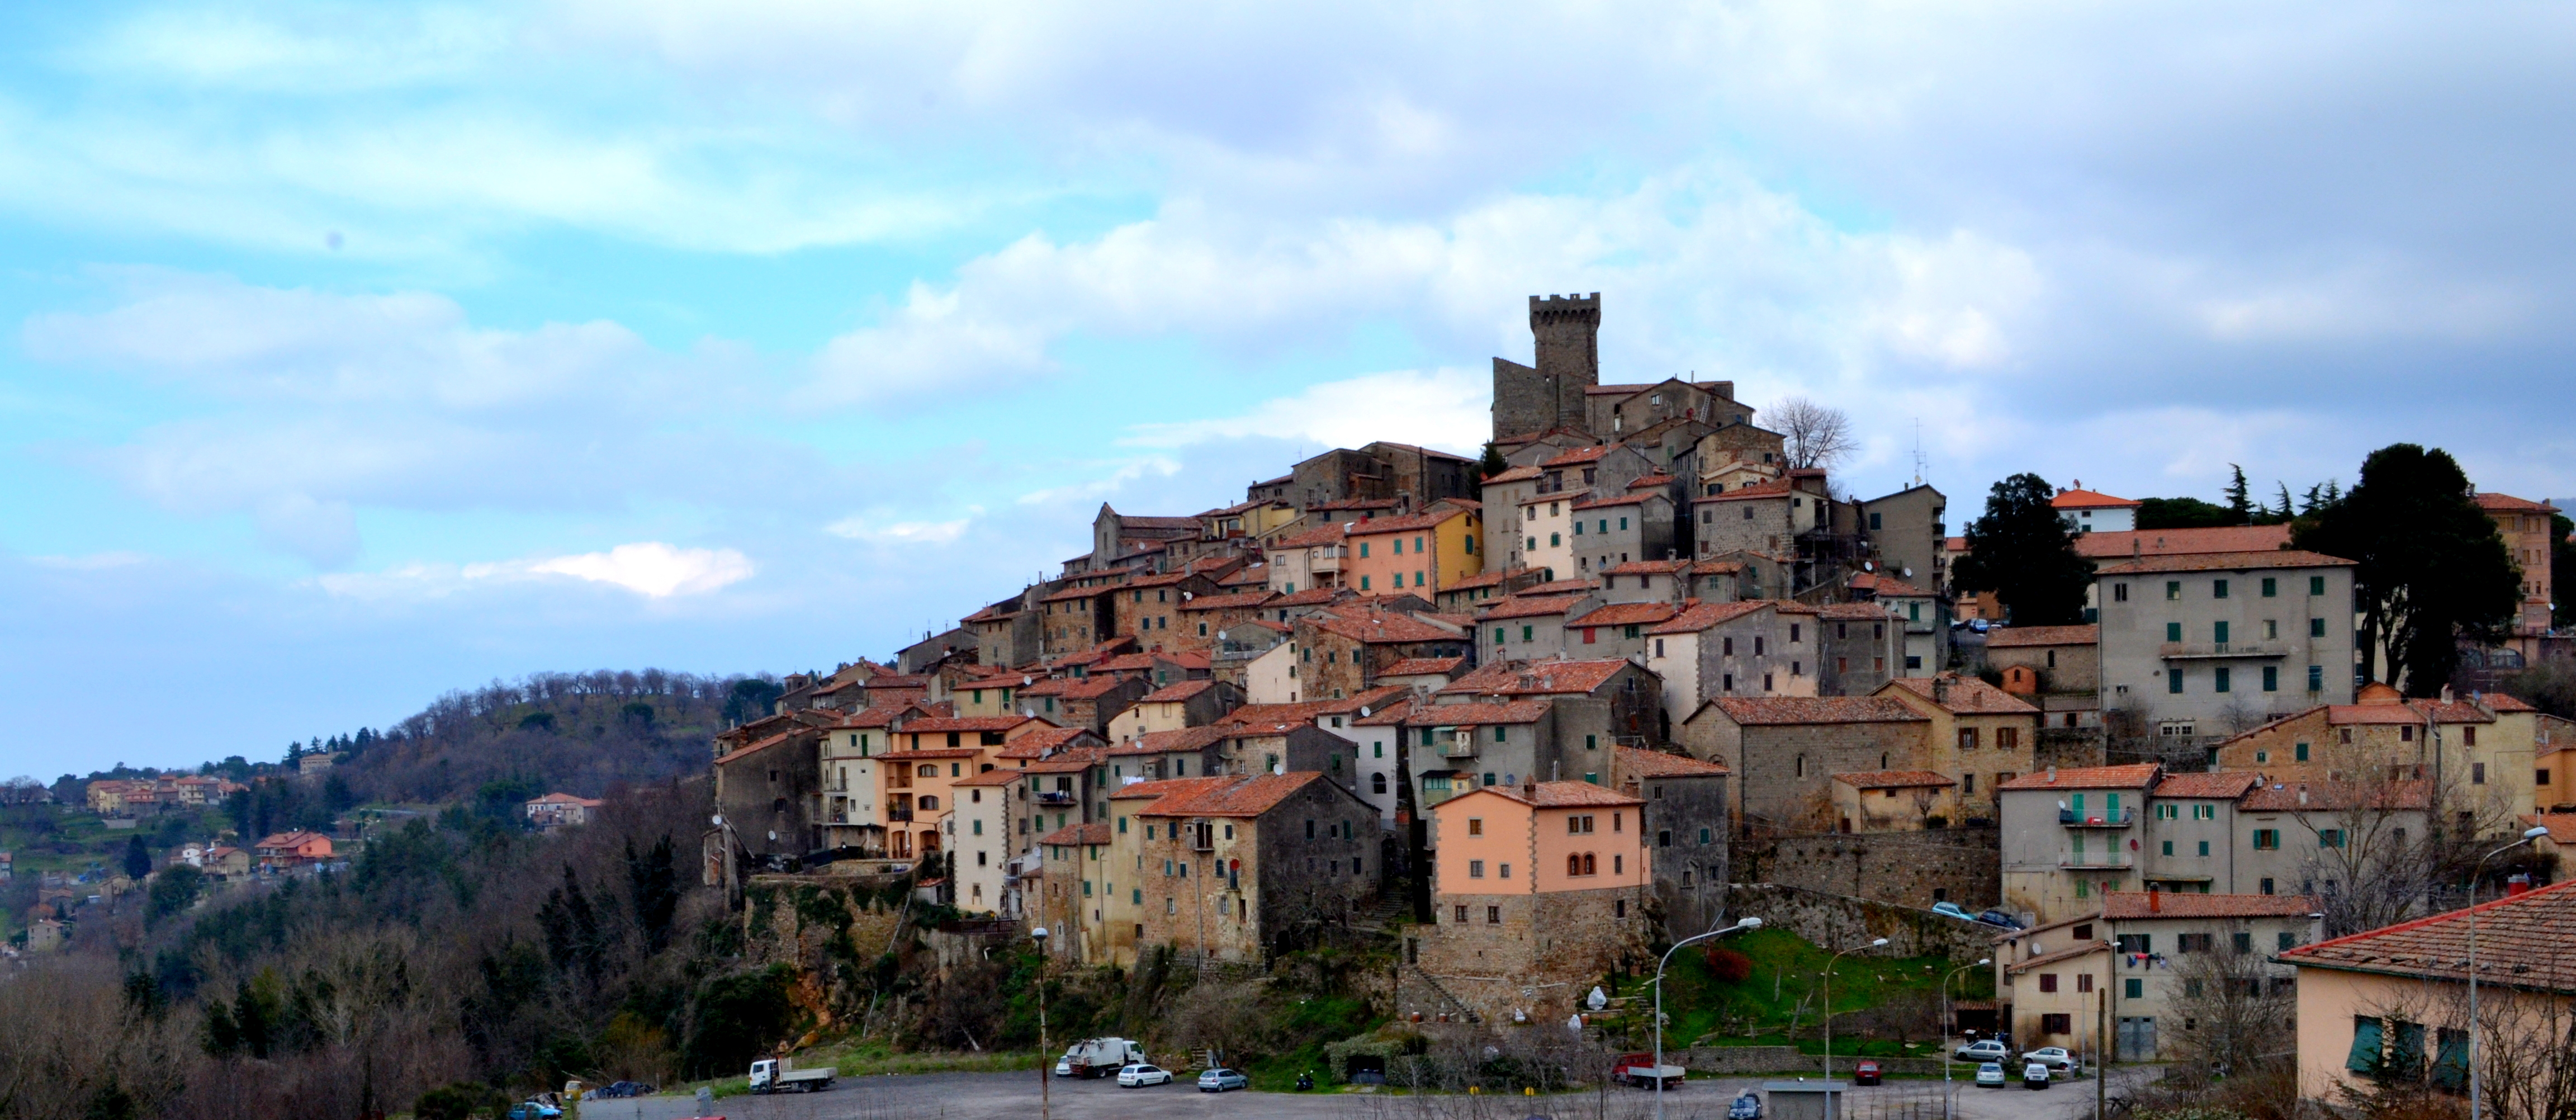 Arcidosso. Tuscany, Italy